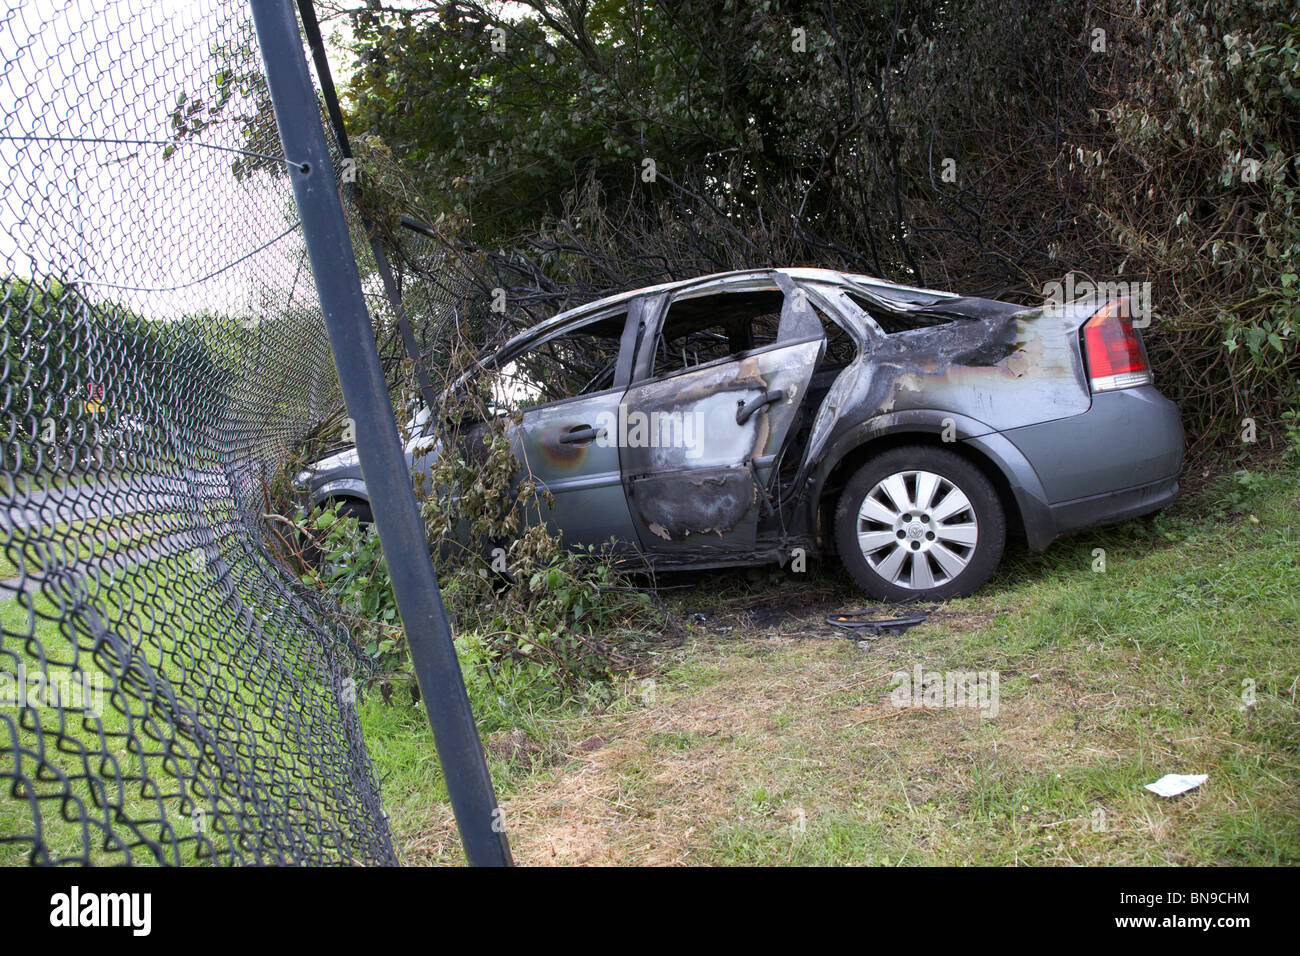 Burnt Out véhicule volé s'est écrasé dans une clôture au Royaume-Uni Banque D'Images